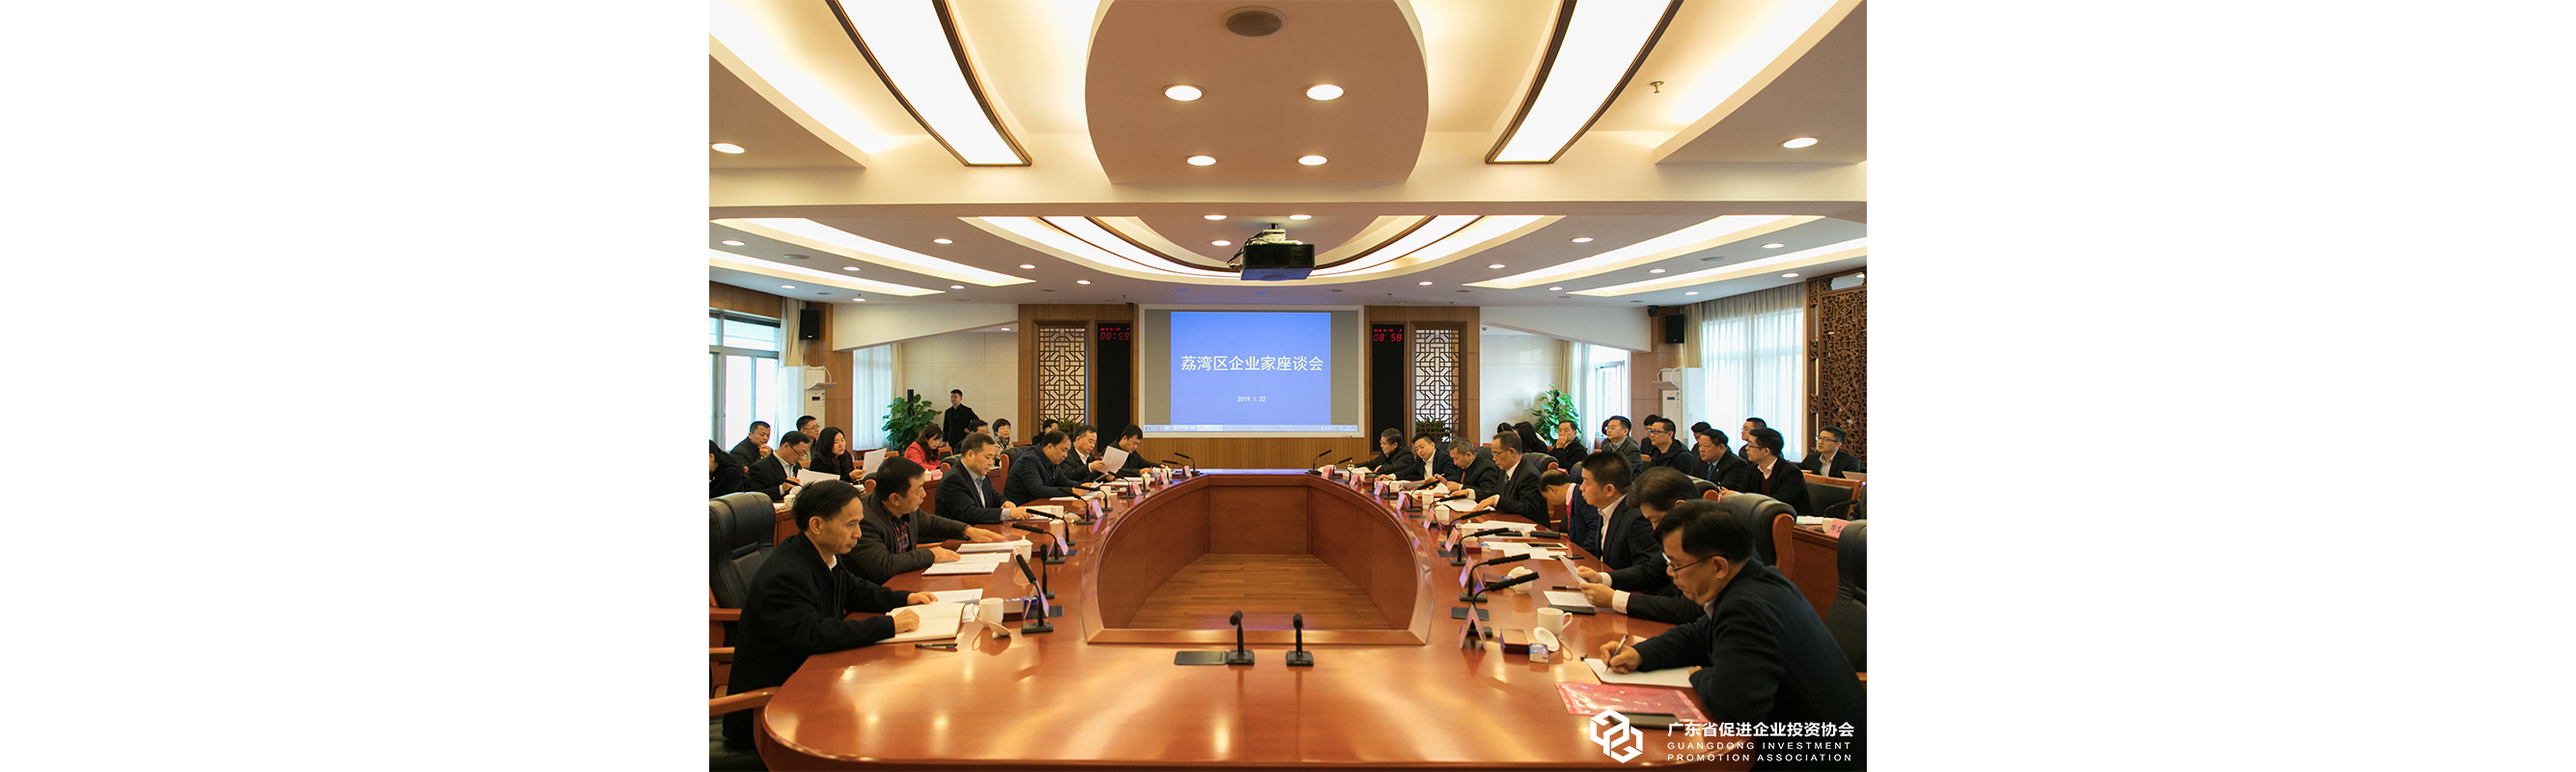 07 广州市荔湾区企业家座谈会共谋未来发展大计.jpg